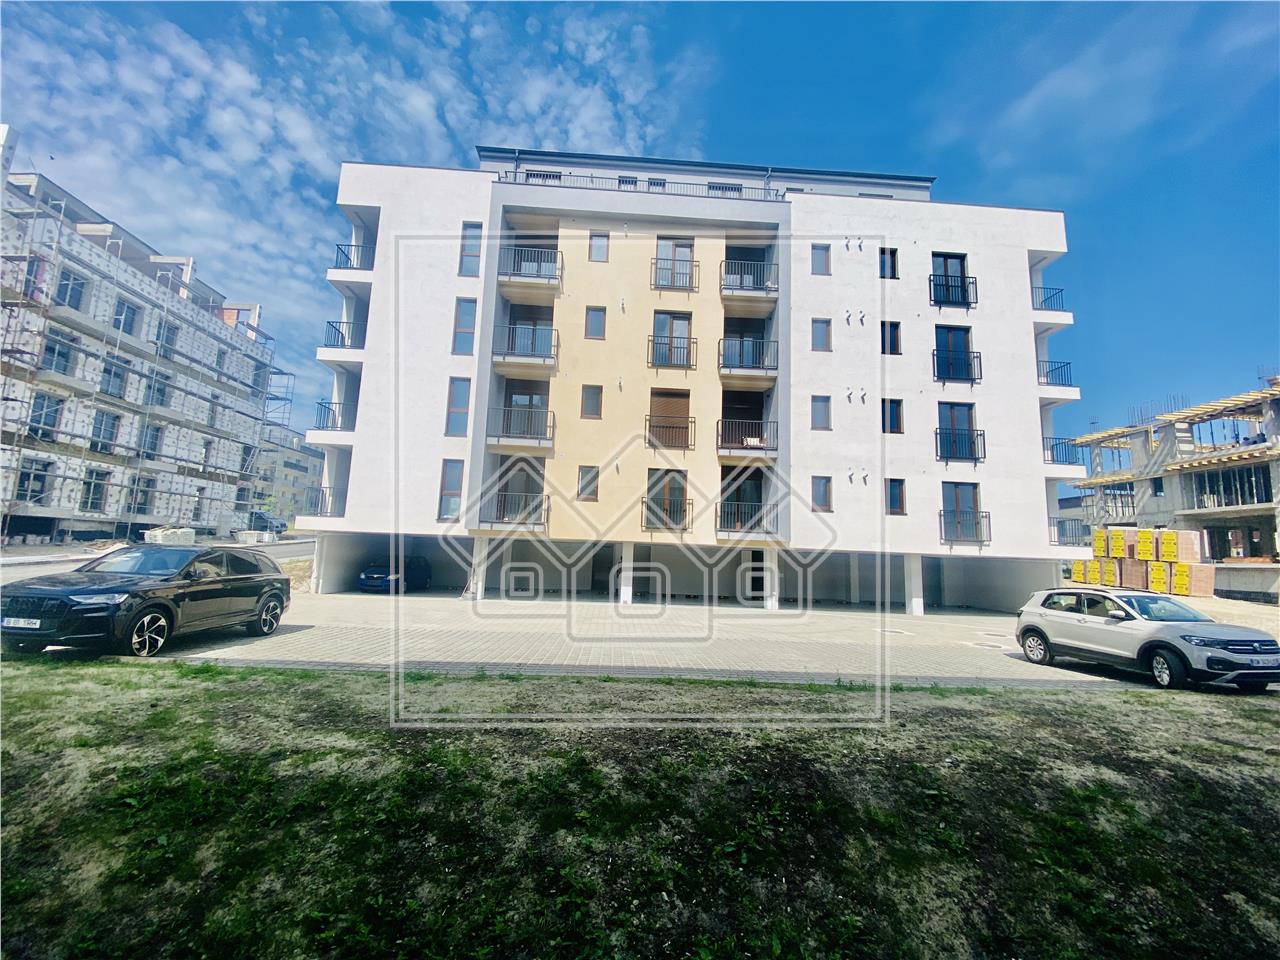 Apartament de vanzare in Sibiu - C4 - 2 balcoane, loc de parcare